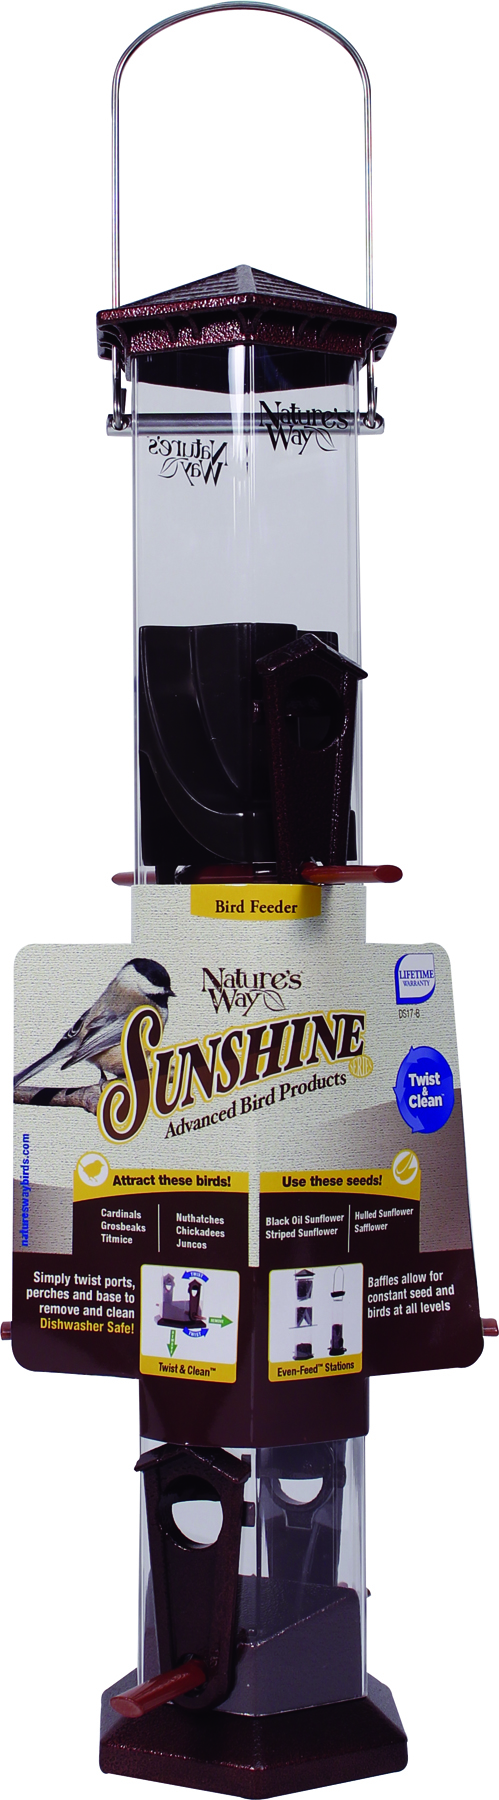 SUNSHINE SERIES TWIST & CLEAN TUBE BIRD FEEDER